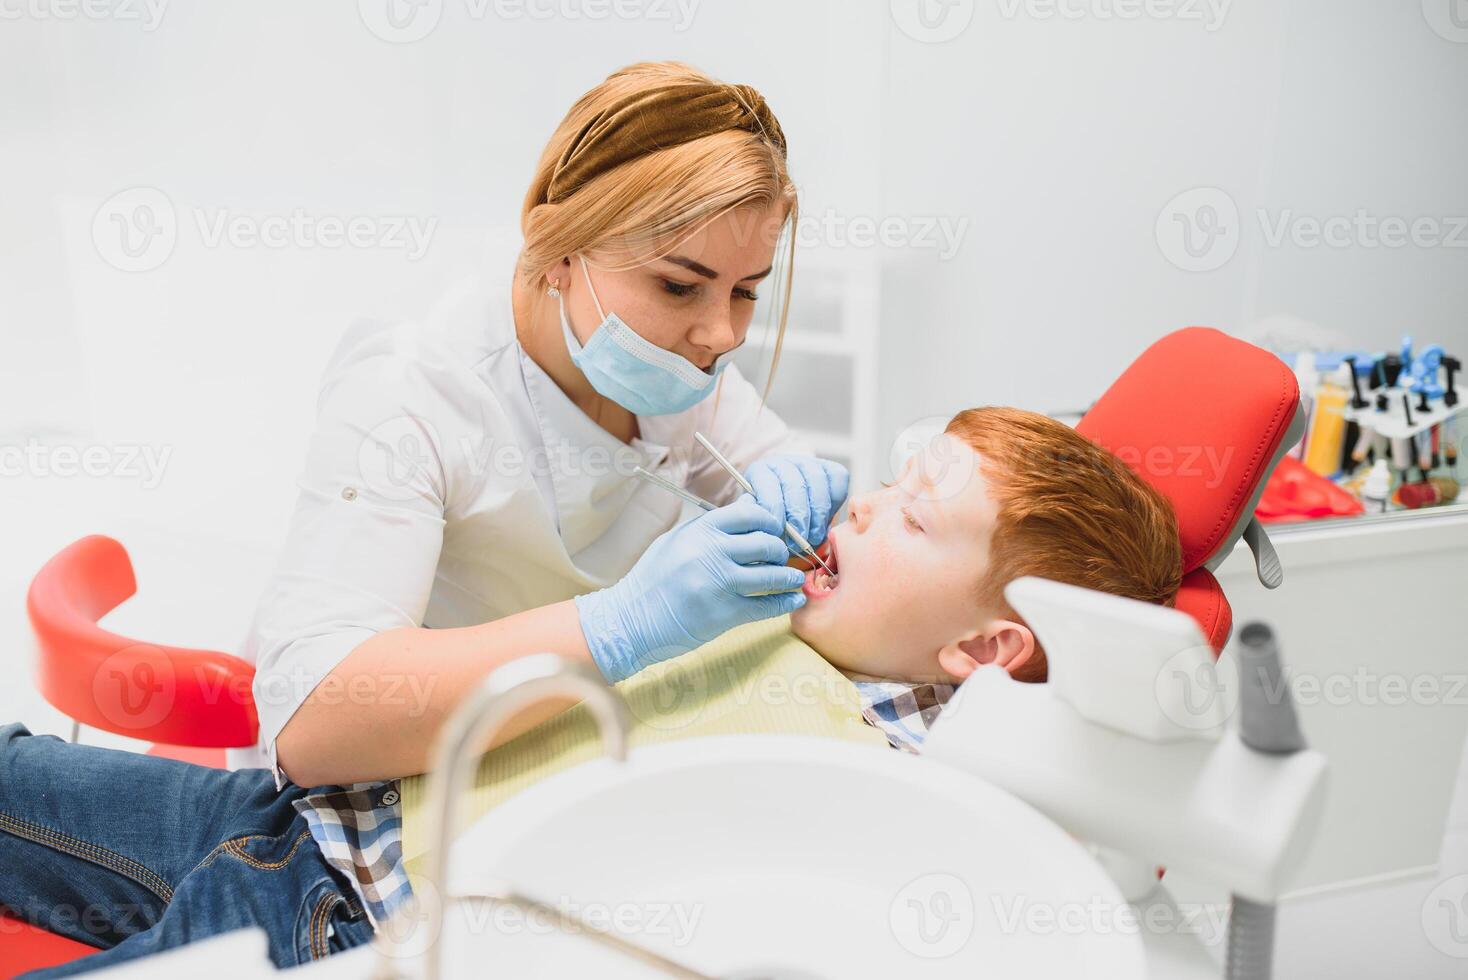 chico satisfecho con el Servicio en el dental oficina. concepto de pediátrico dental tratamiento foto